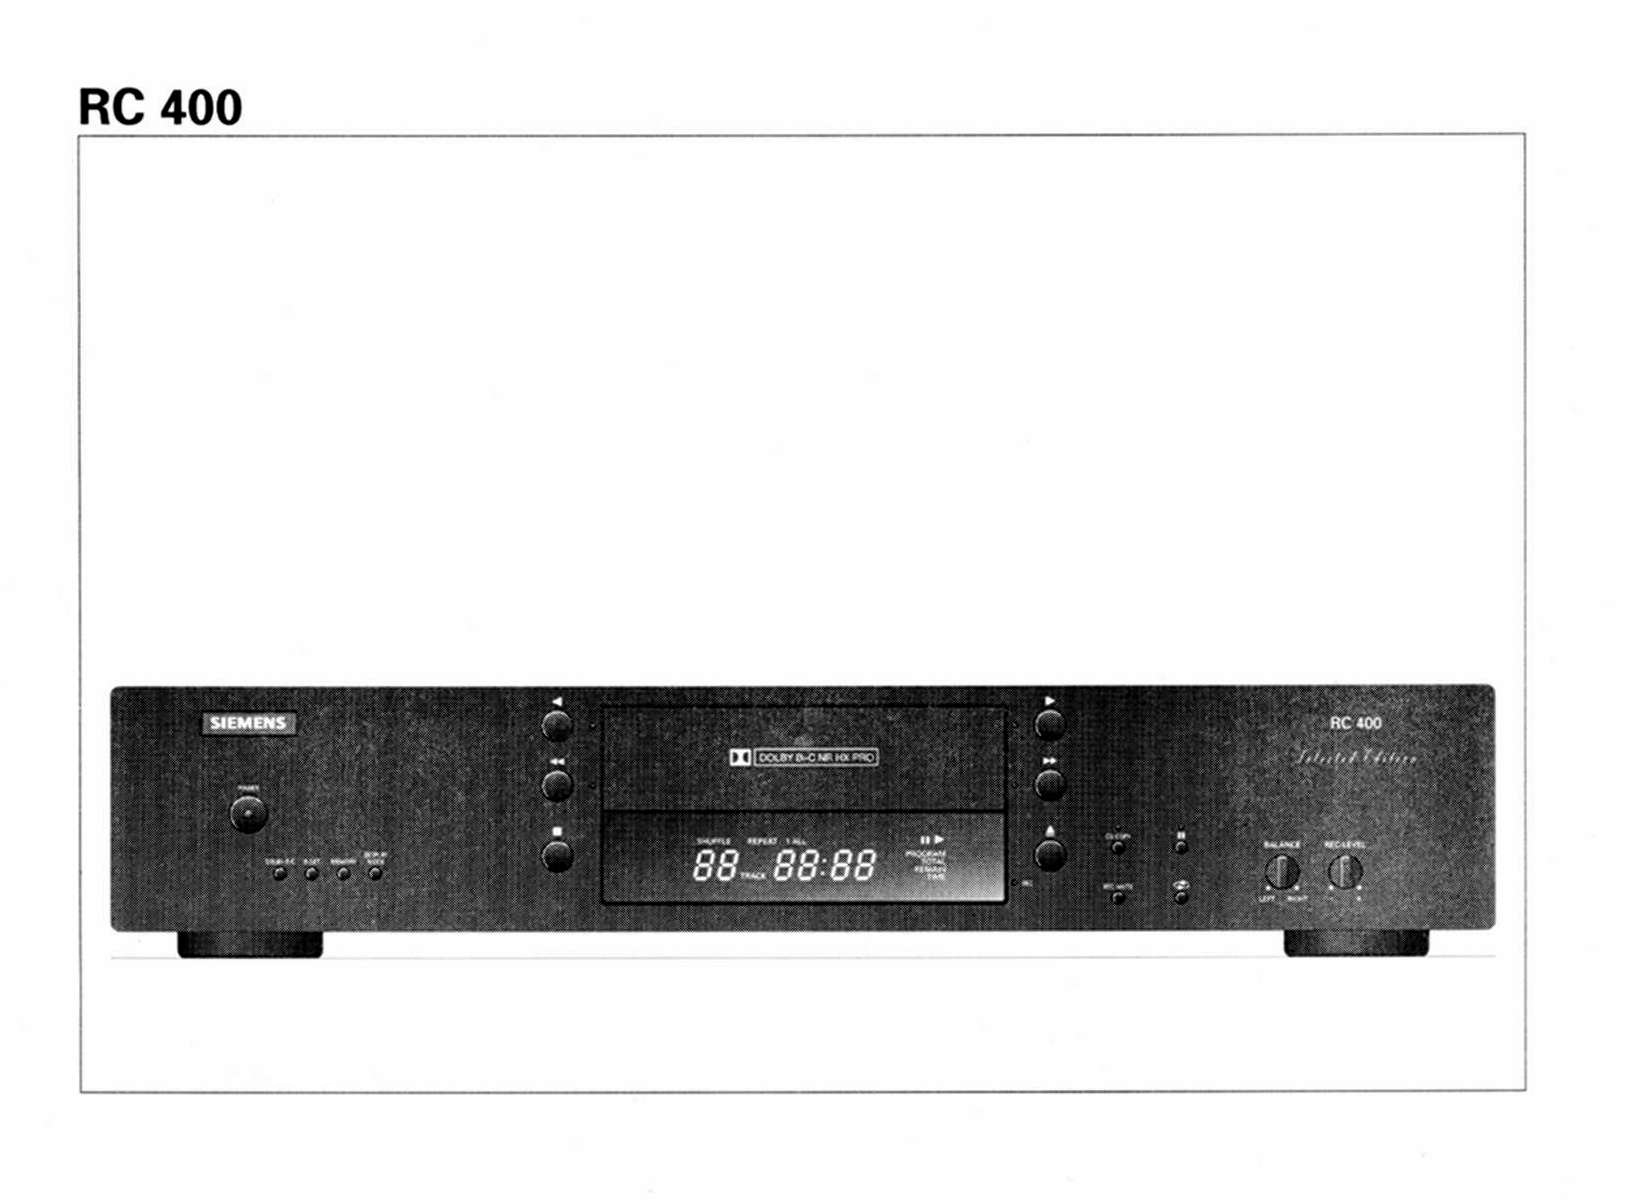 Siemens RC-400-Manual-1997.jpg